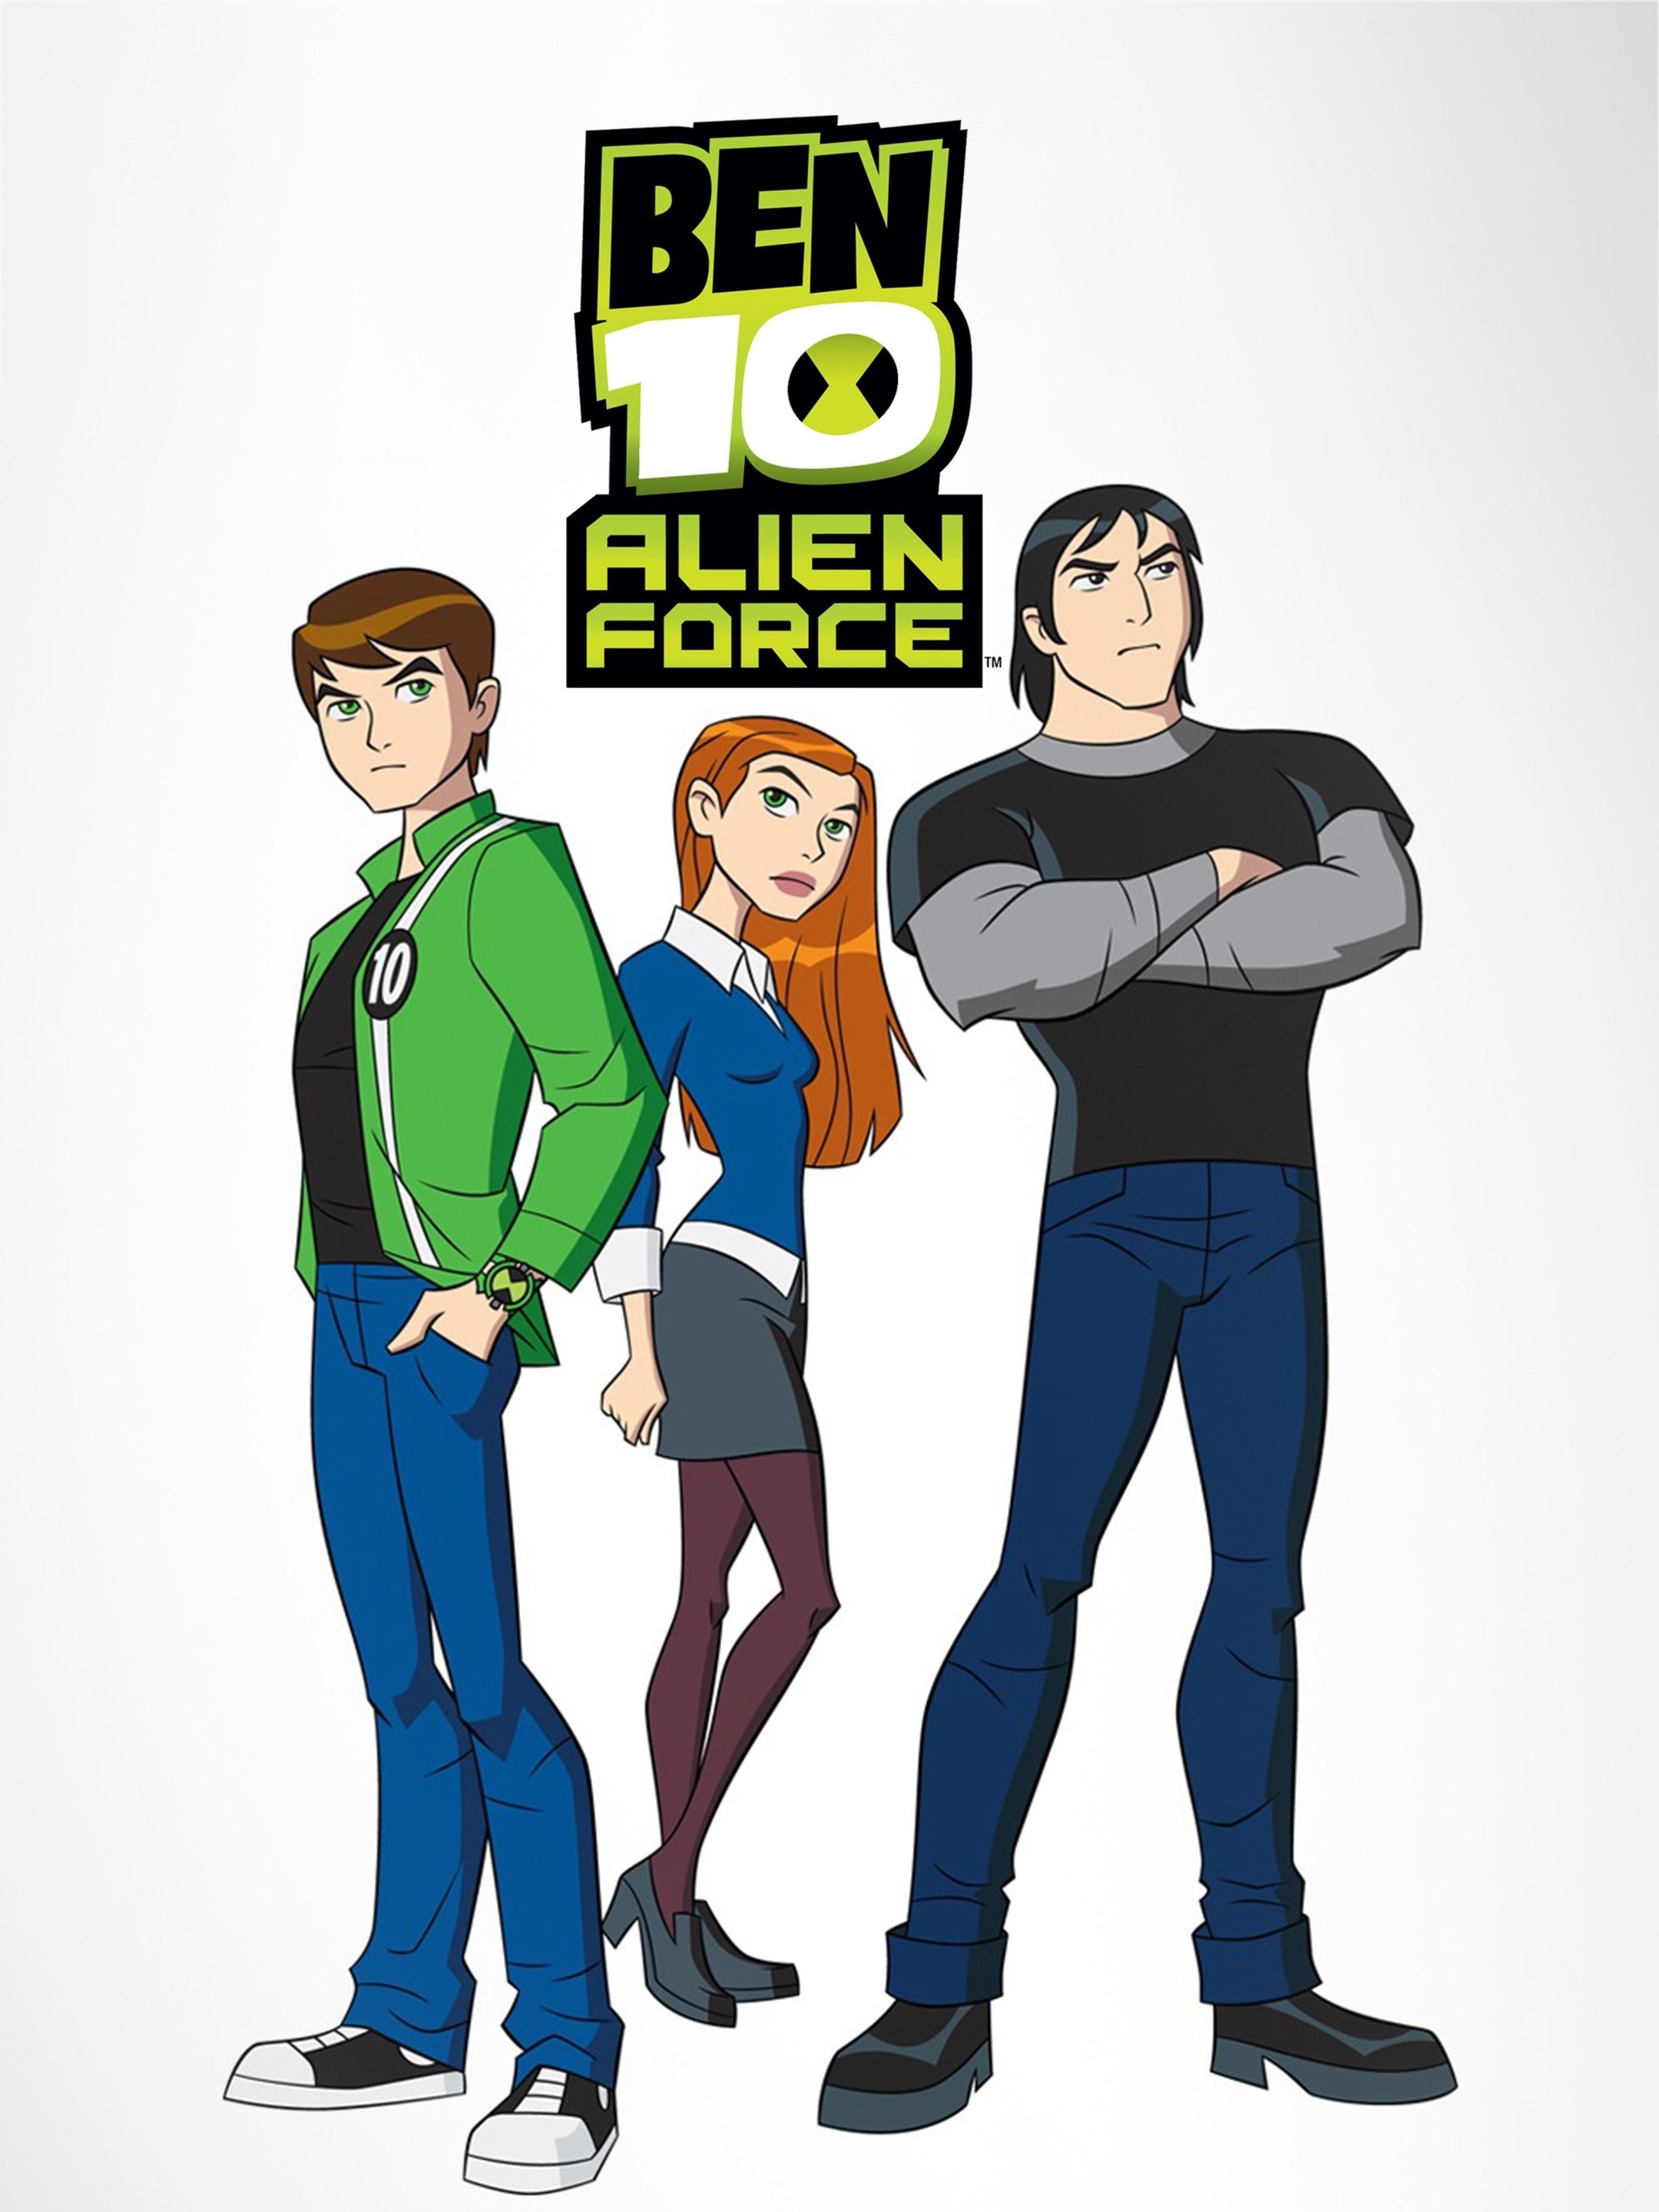 Ben 10 alien force, Ben 10 ultimate alien, Ben 10 birthday